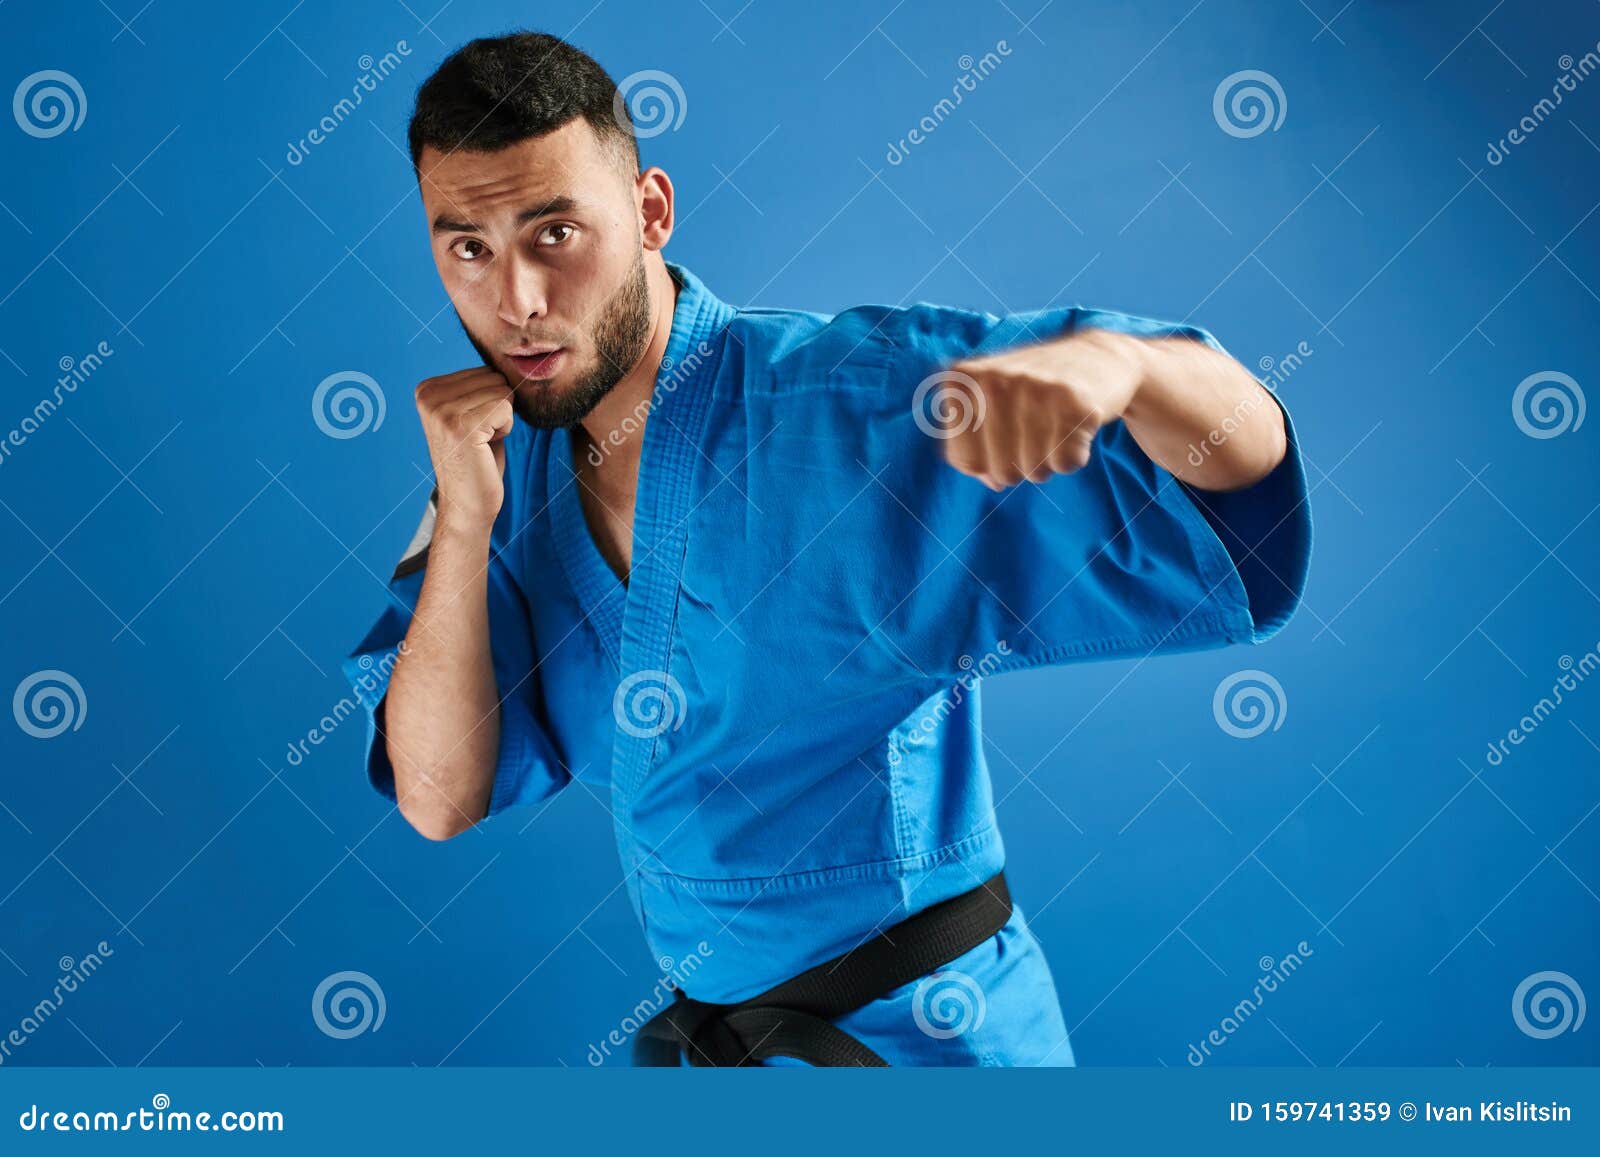 Я спешу на тренировку в кимоно сражаюсь. Каратист синий. Казах в кимоно. Азиат каратист. Карате синь.